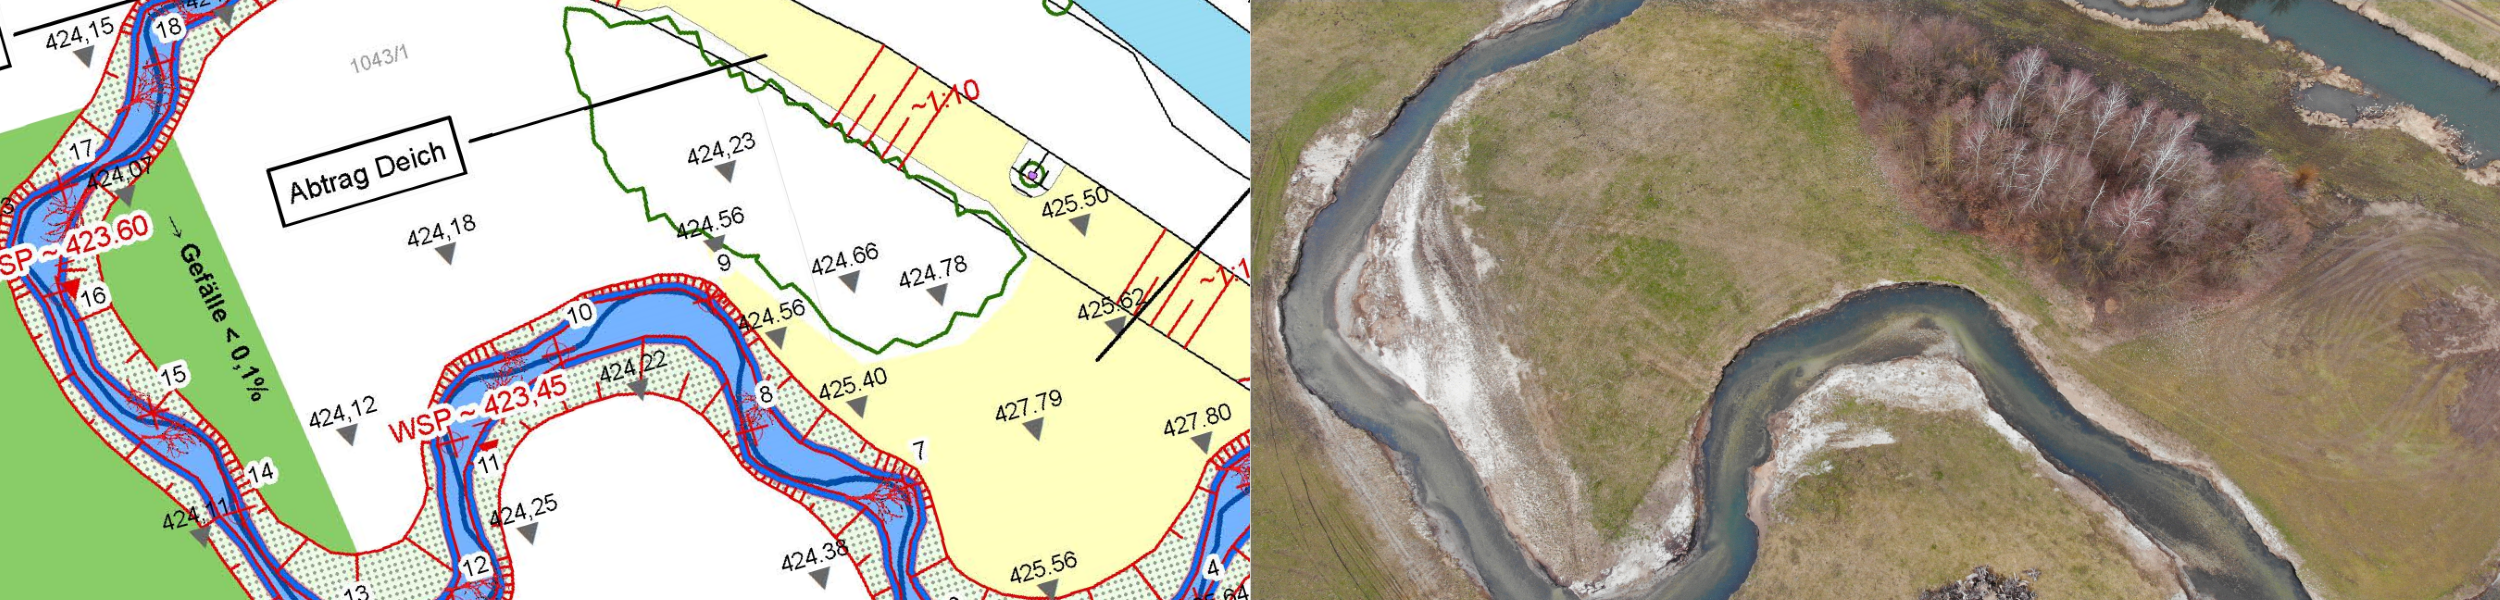 Ansicht von einem Flussverlauf - Kartenausschnitt links und Luftbild rechts geteilt